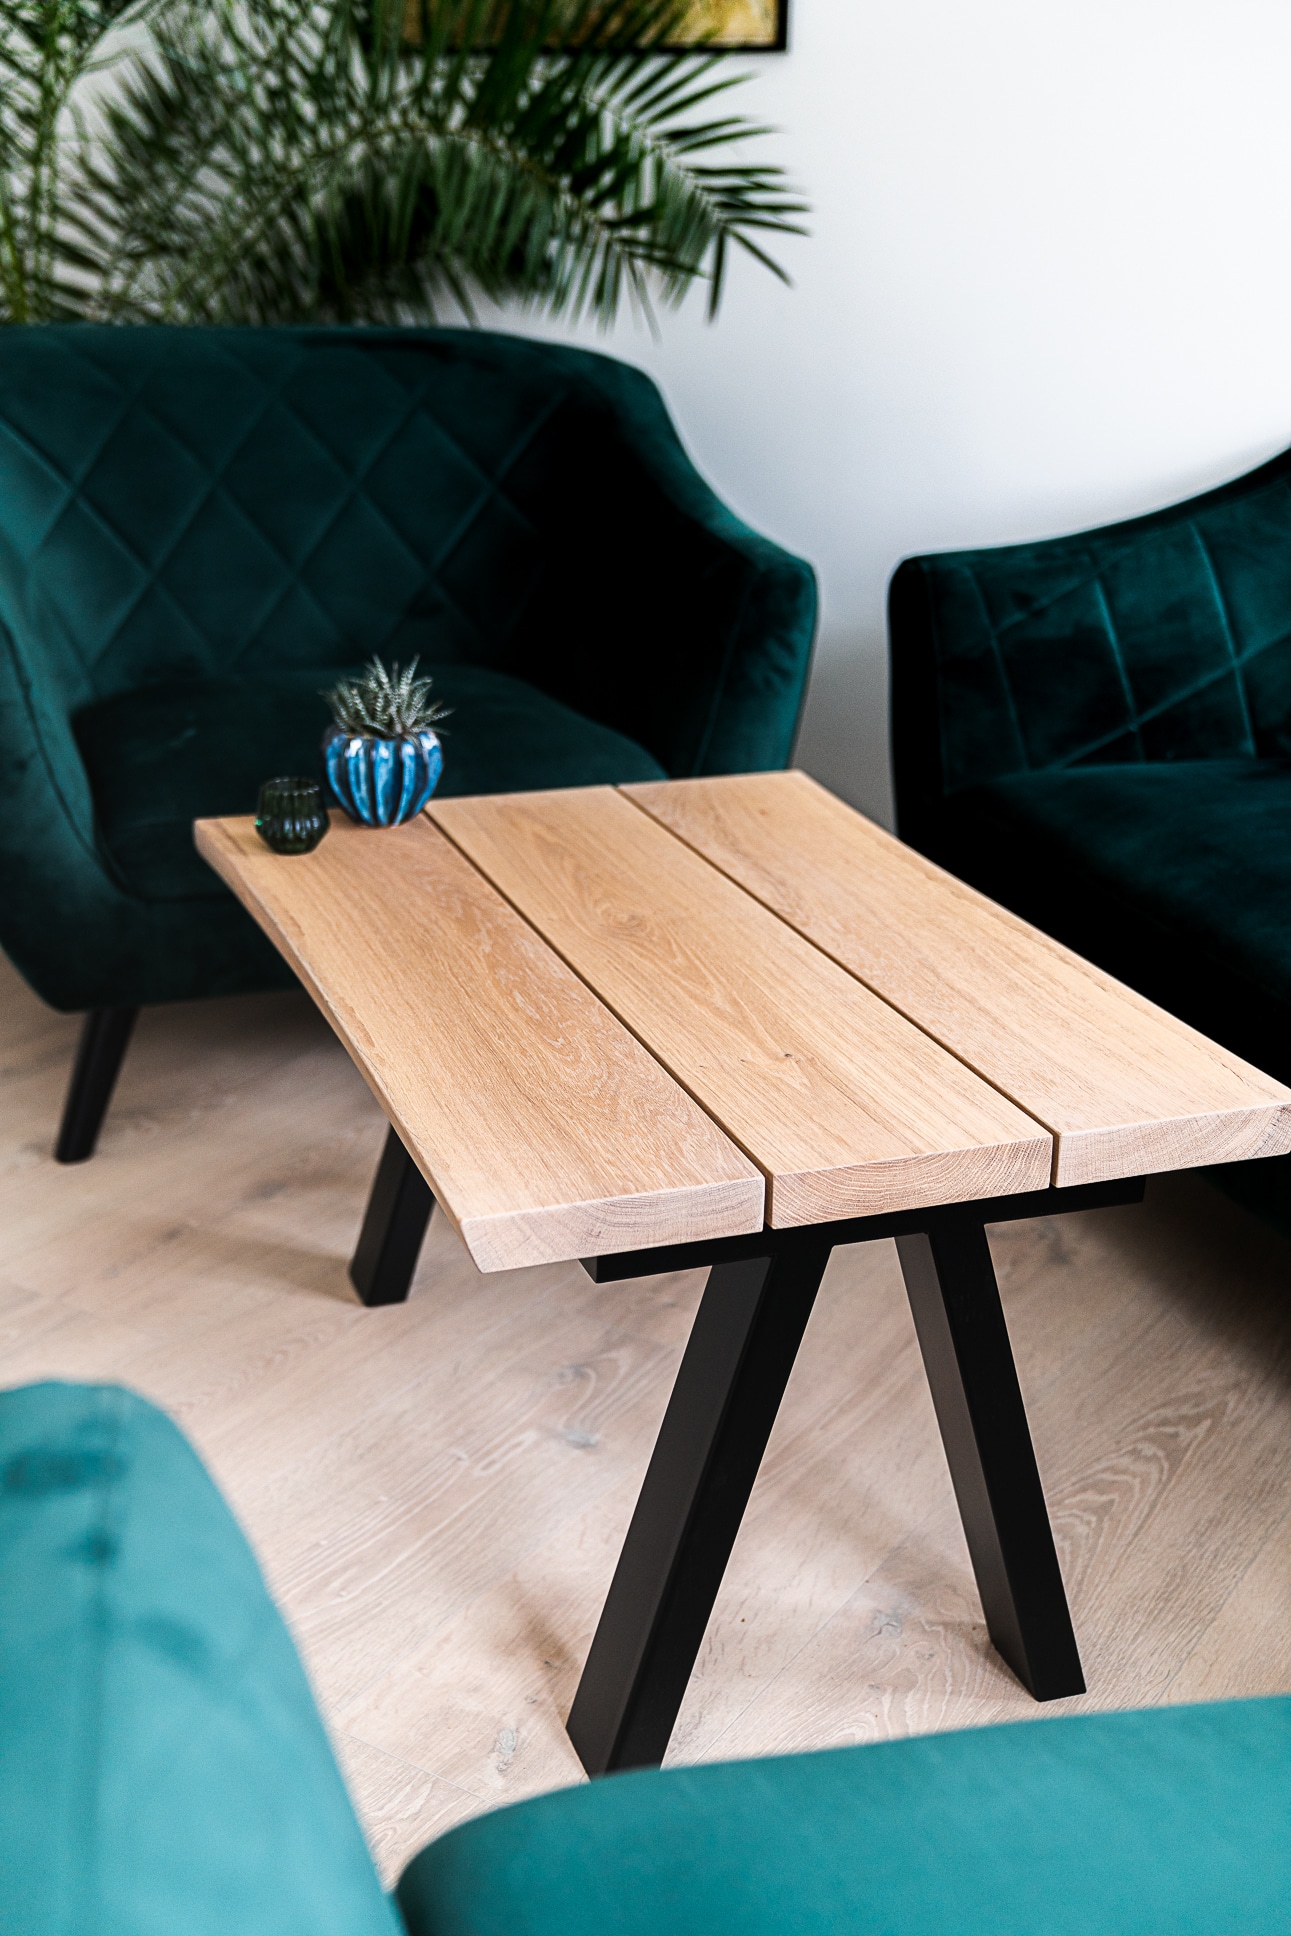 jord vold døråbning Frigg - Planke sofabord i lys eg - Designet til dit hjem → Naturplank